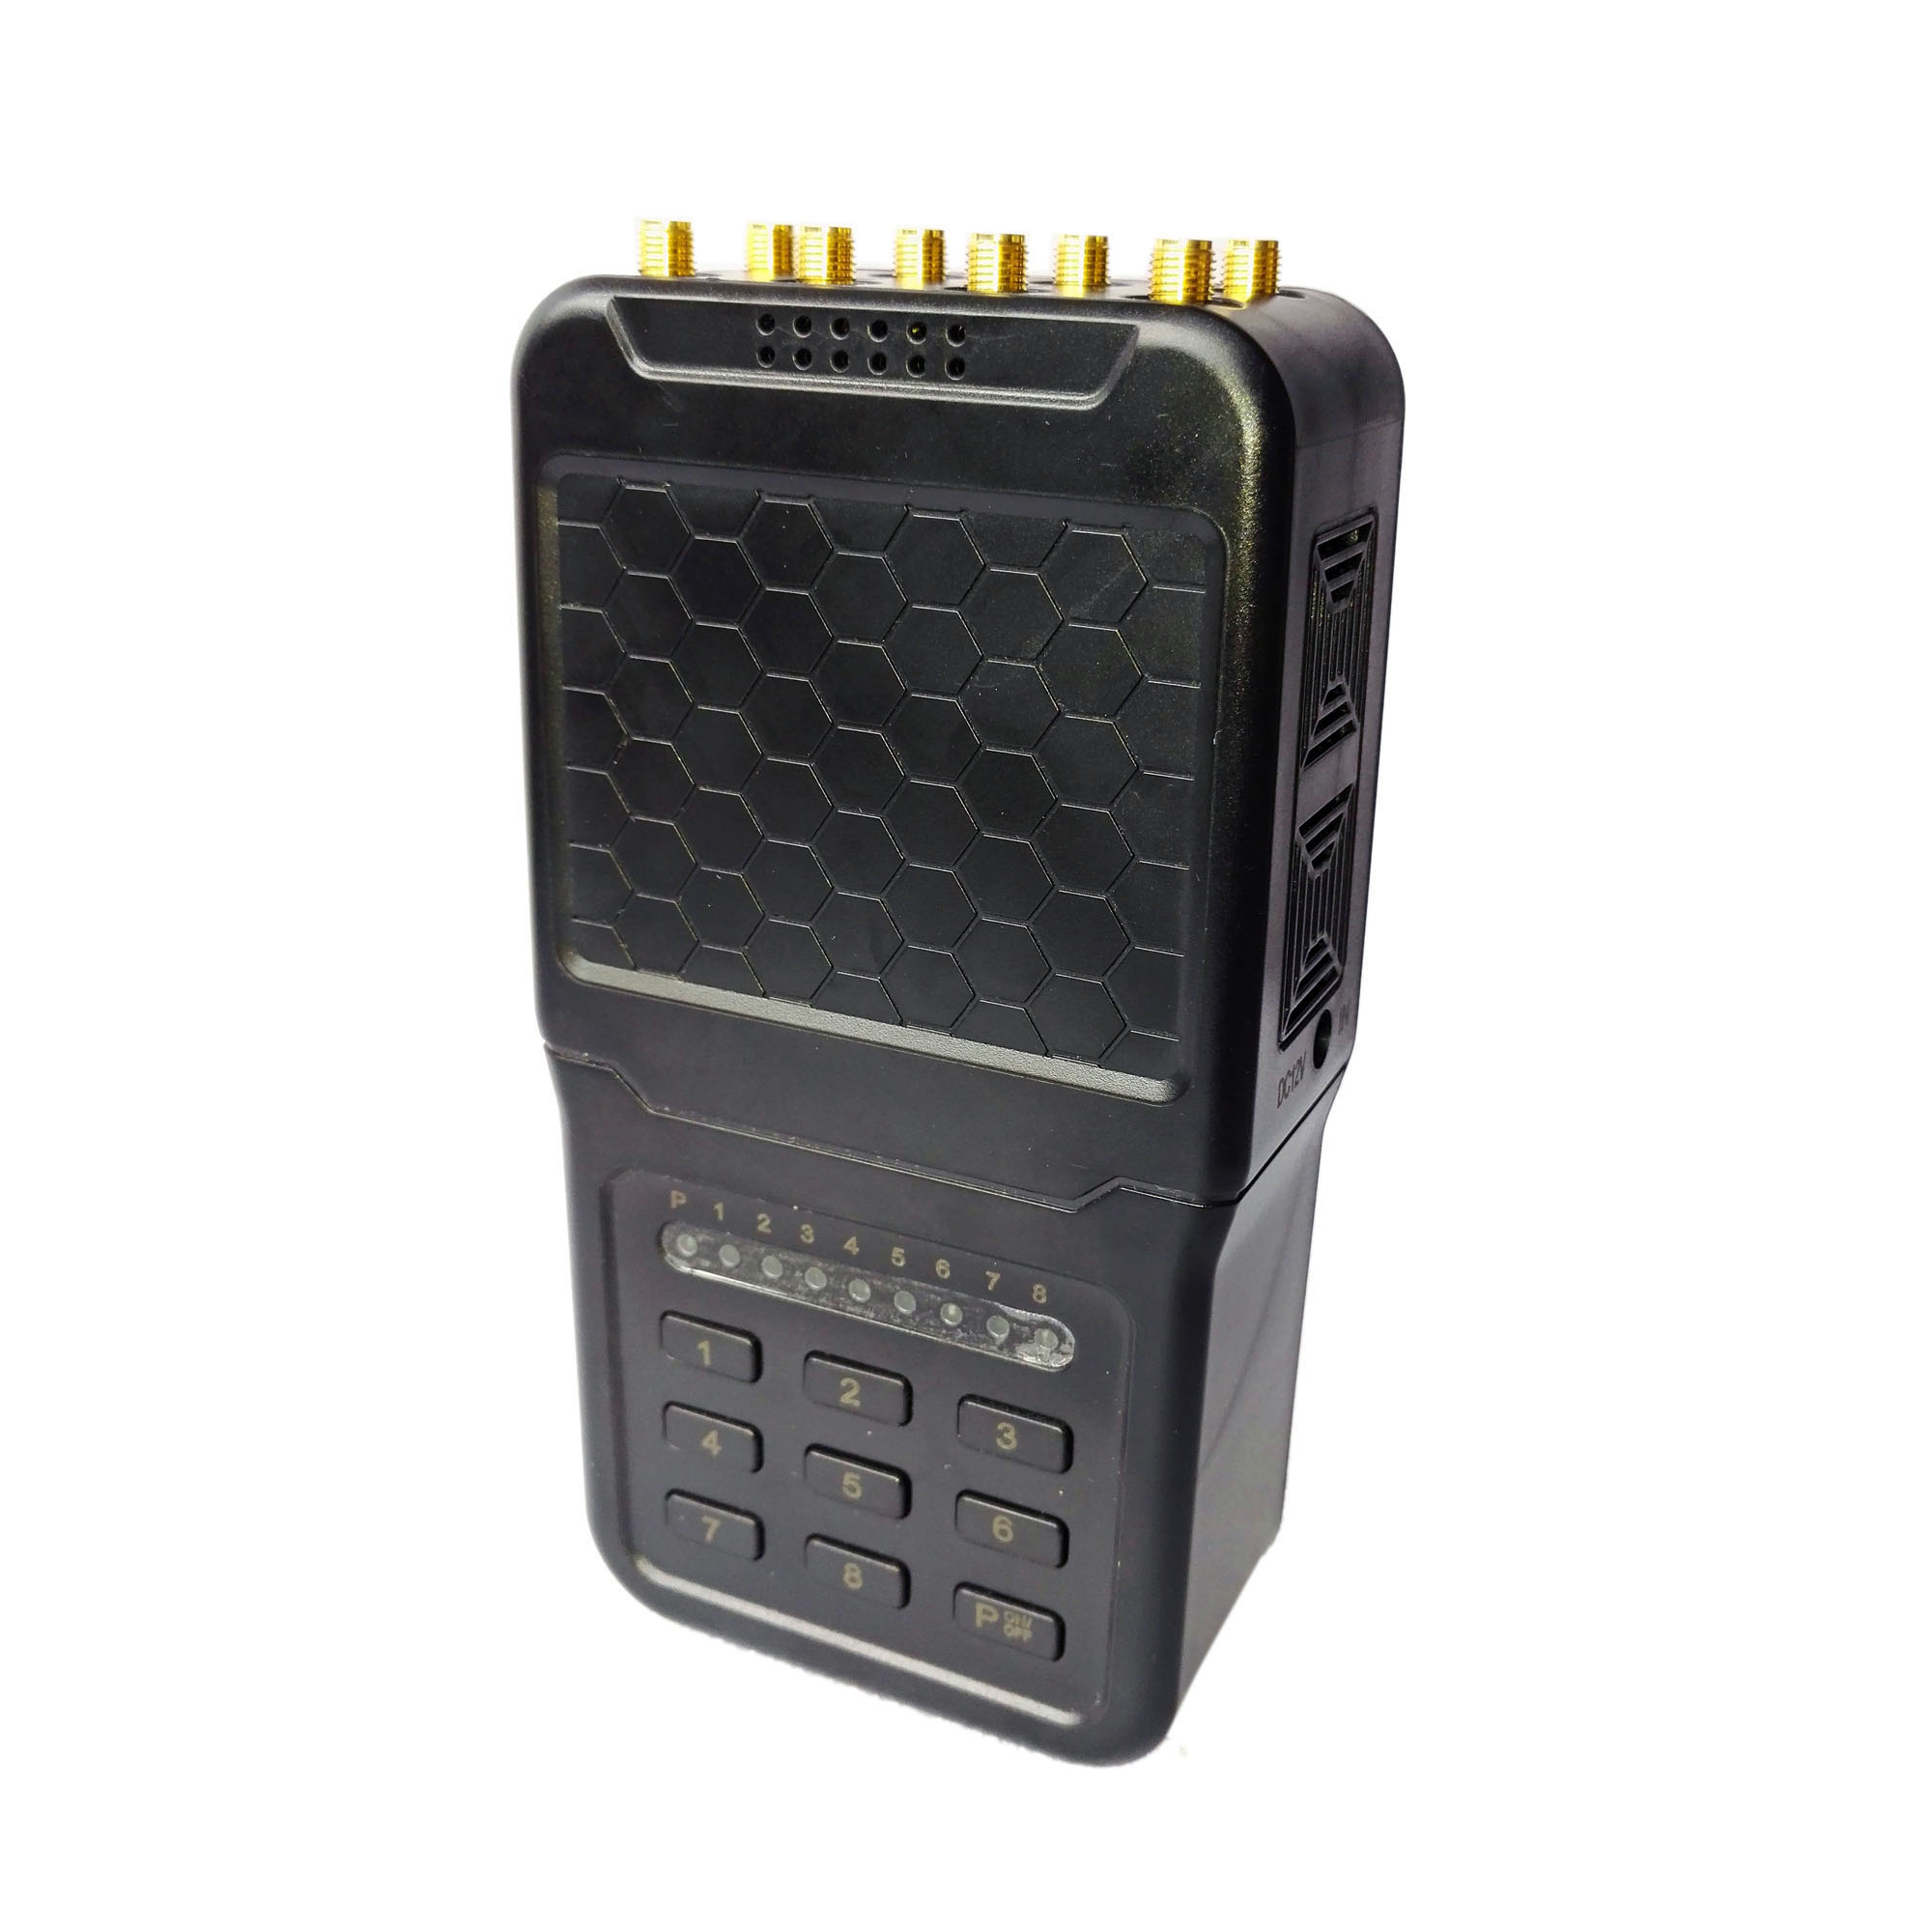 Brouilleur GSM Portable avec batterie 2G-3G-4G GPS WiFi Réglable +